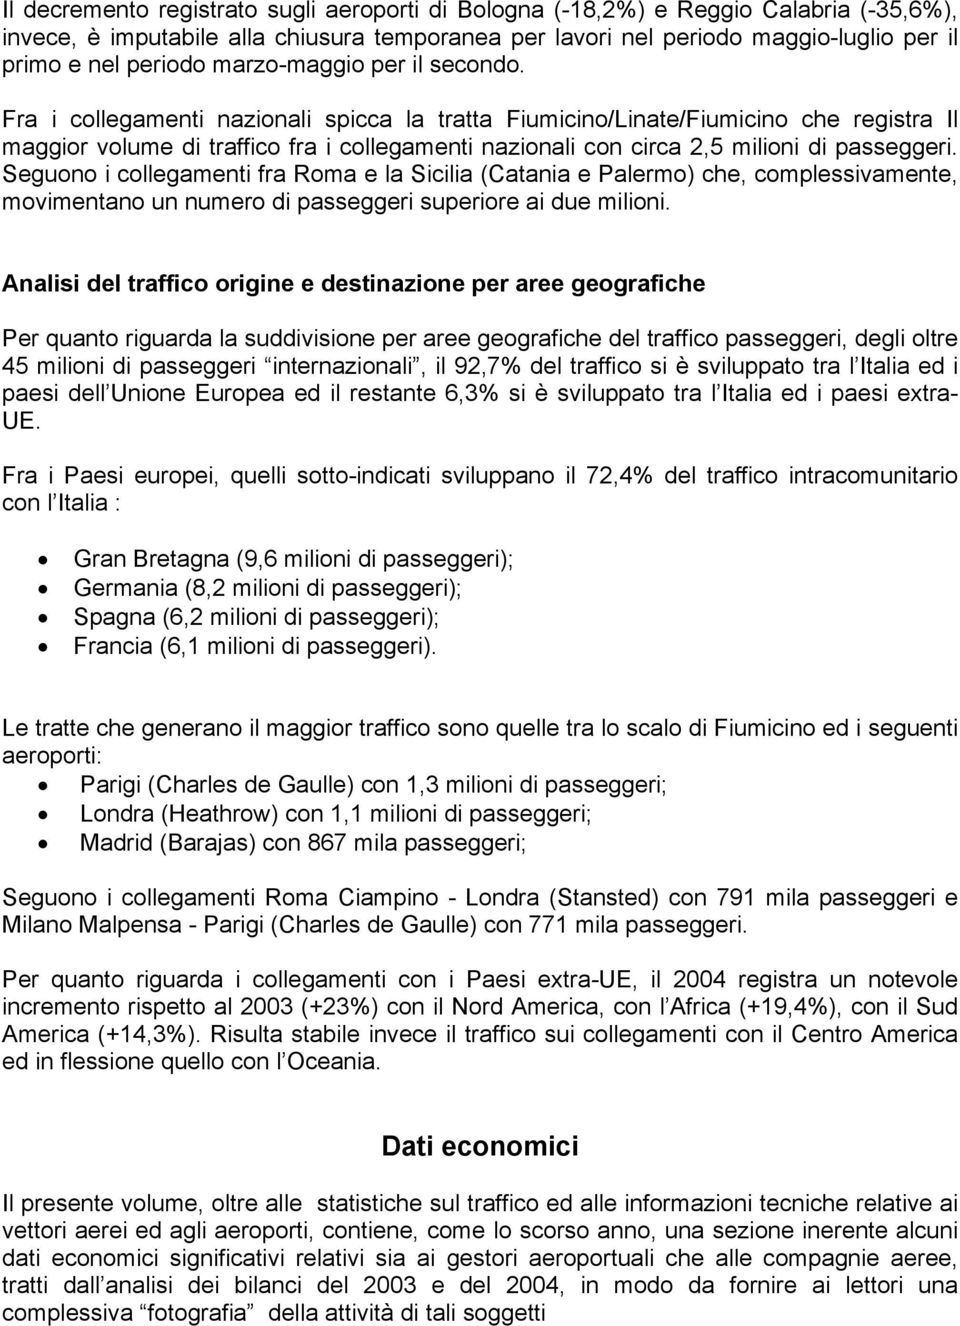 Fra i collegamenti nazionali spicca la tratta Fiumicino/Linate/Fiumicino che registra Il maggior volume di traffico fra i collegamenti nazionali con circa 2,5 milioni di passeggeri.